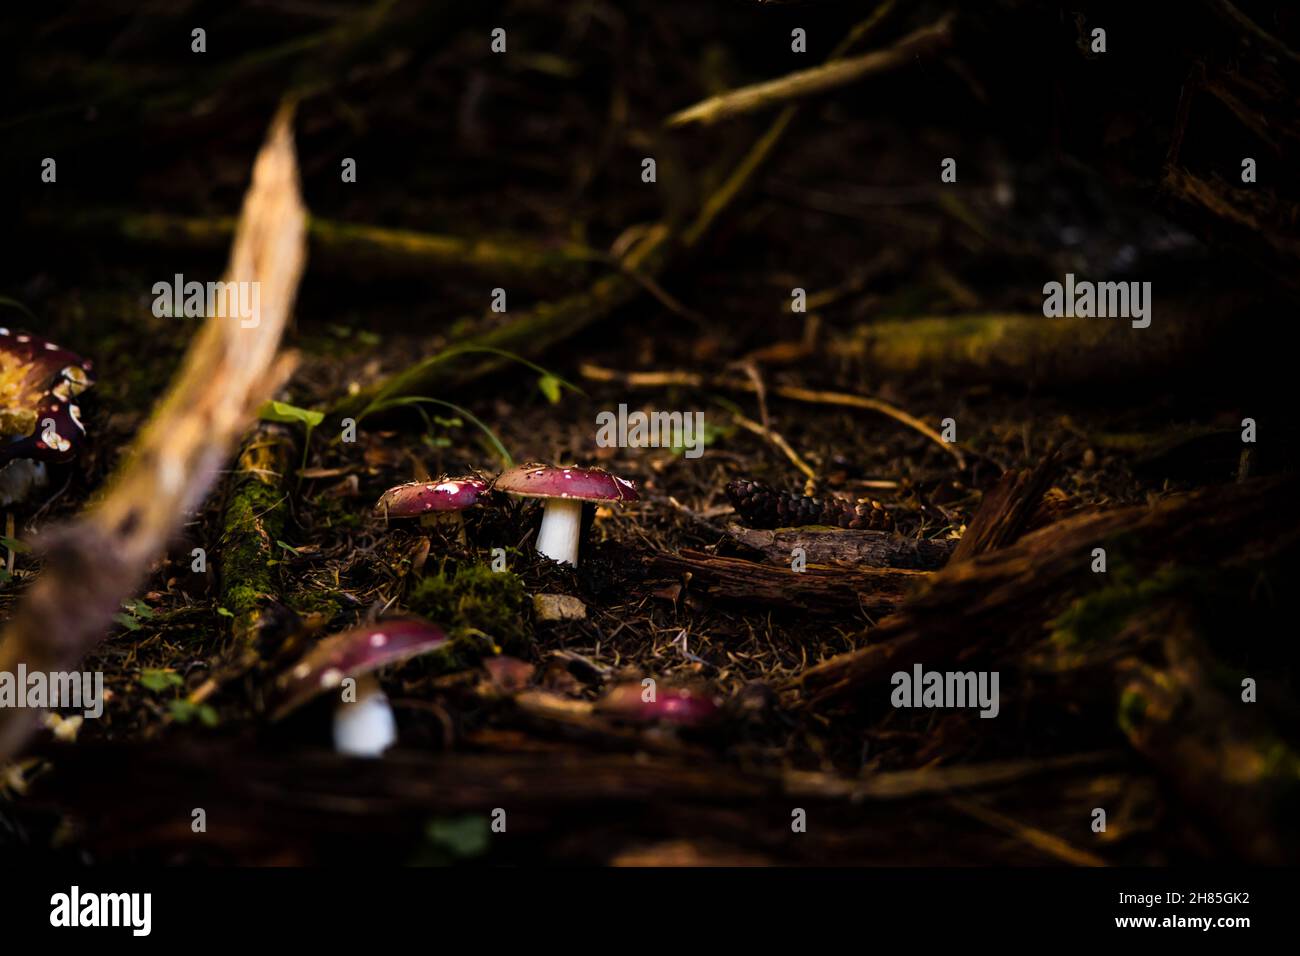 Amanita muscaria. Rotgefleckte Pilzpilze. Fliegen Sie agarisch. Wunderschöne Naturlandschaft. Brauner Boden, unscharfer Hintergrund. Hochwertige Fotos Stockfoto